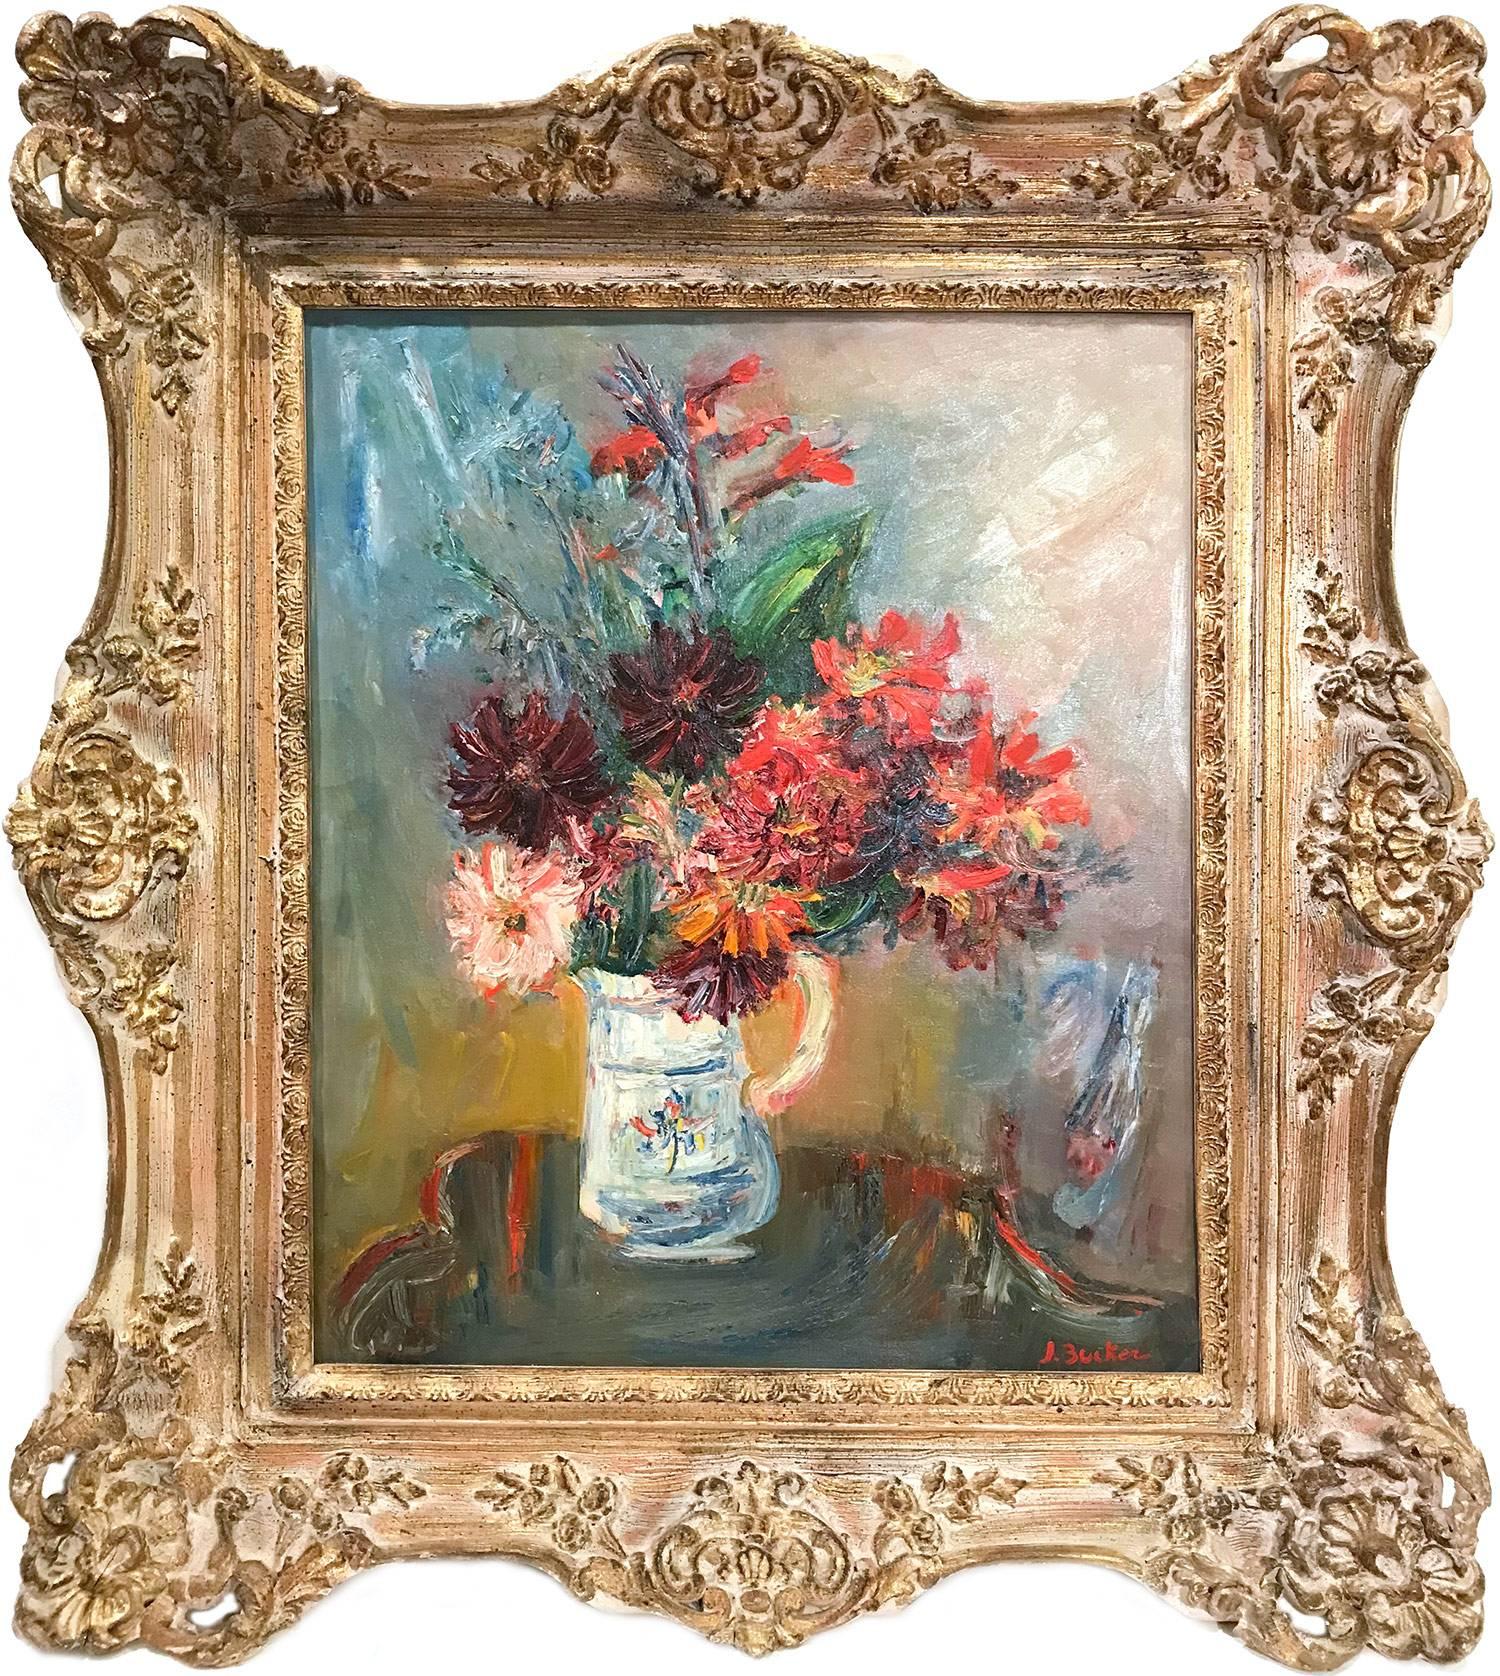 Still-Life Painting Jacques Zucker - Nature morte post-impressionniste à l'huile sur toile "Floral Arrangment in Jug".